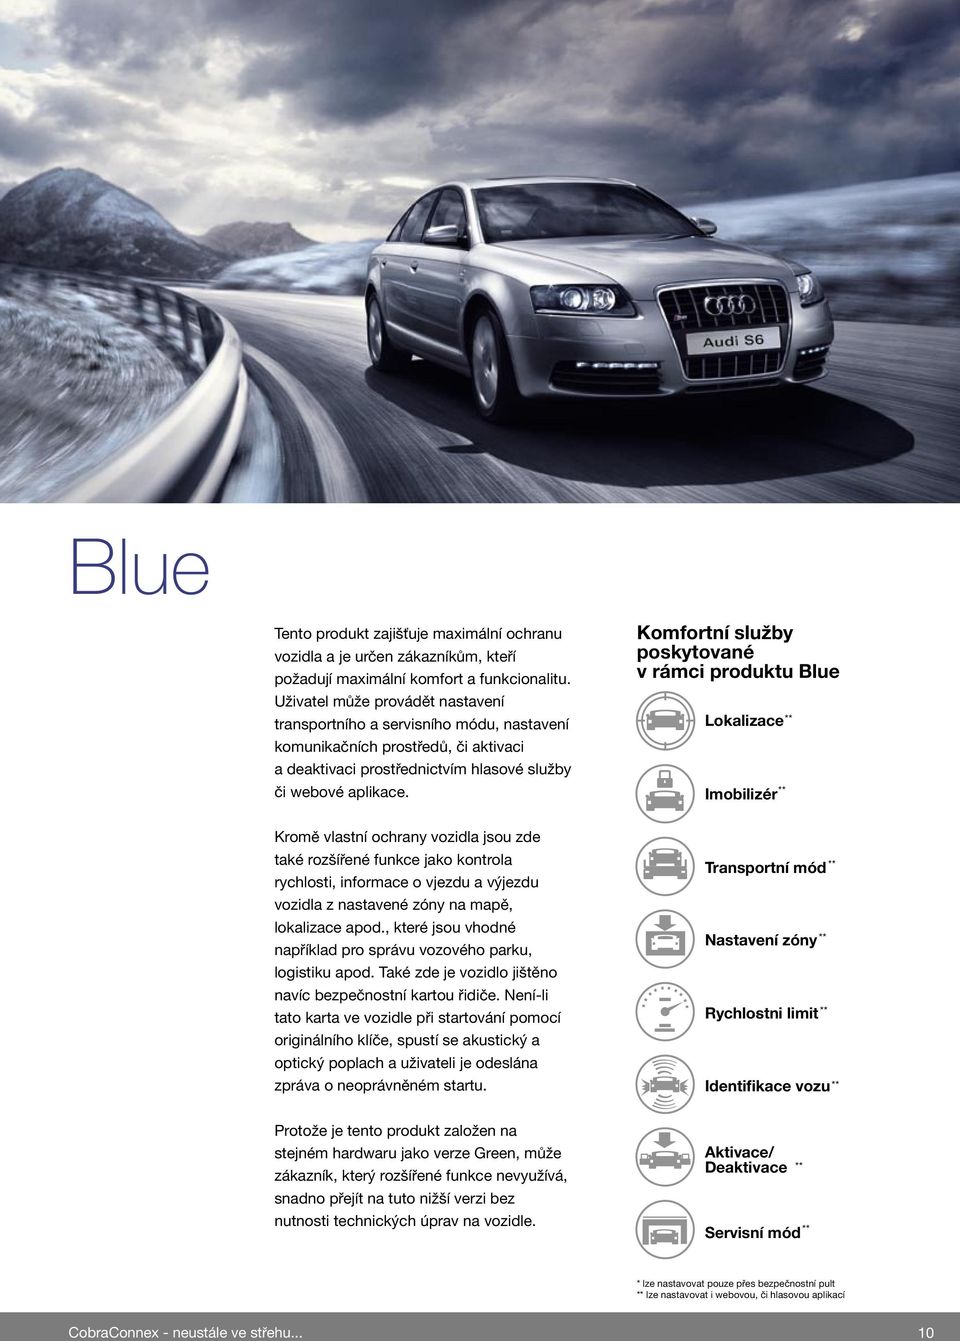 Komfortní služby poskytované v rámci produktu Blue Lokalizace Imobilizér ** ** Kromě vlastní ochrany vozidla jsou zde také rozšířené funkce jako kontrola rychlosti, informace o vjezdu a výjezdu